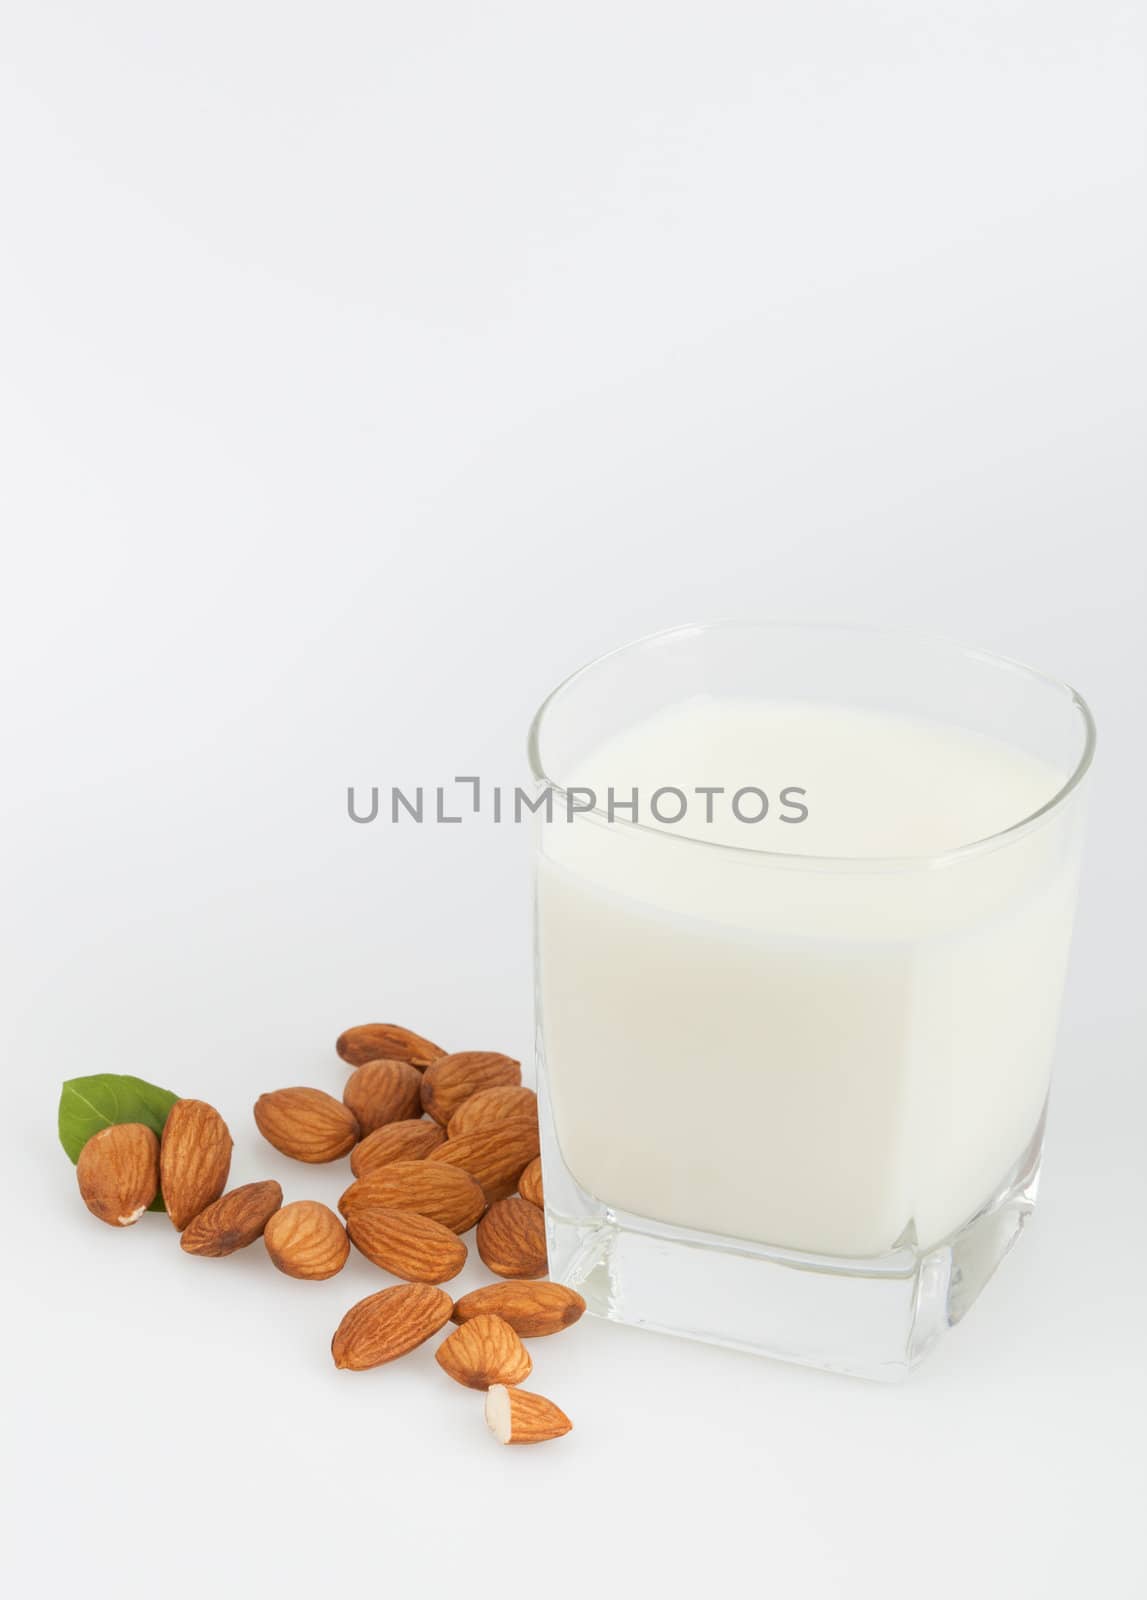 Almond milk with almonds by Izaphoto